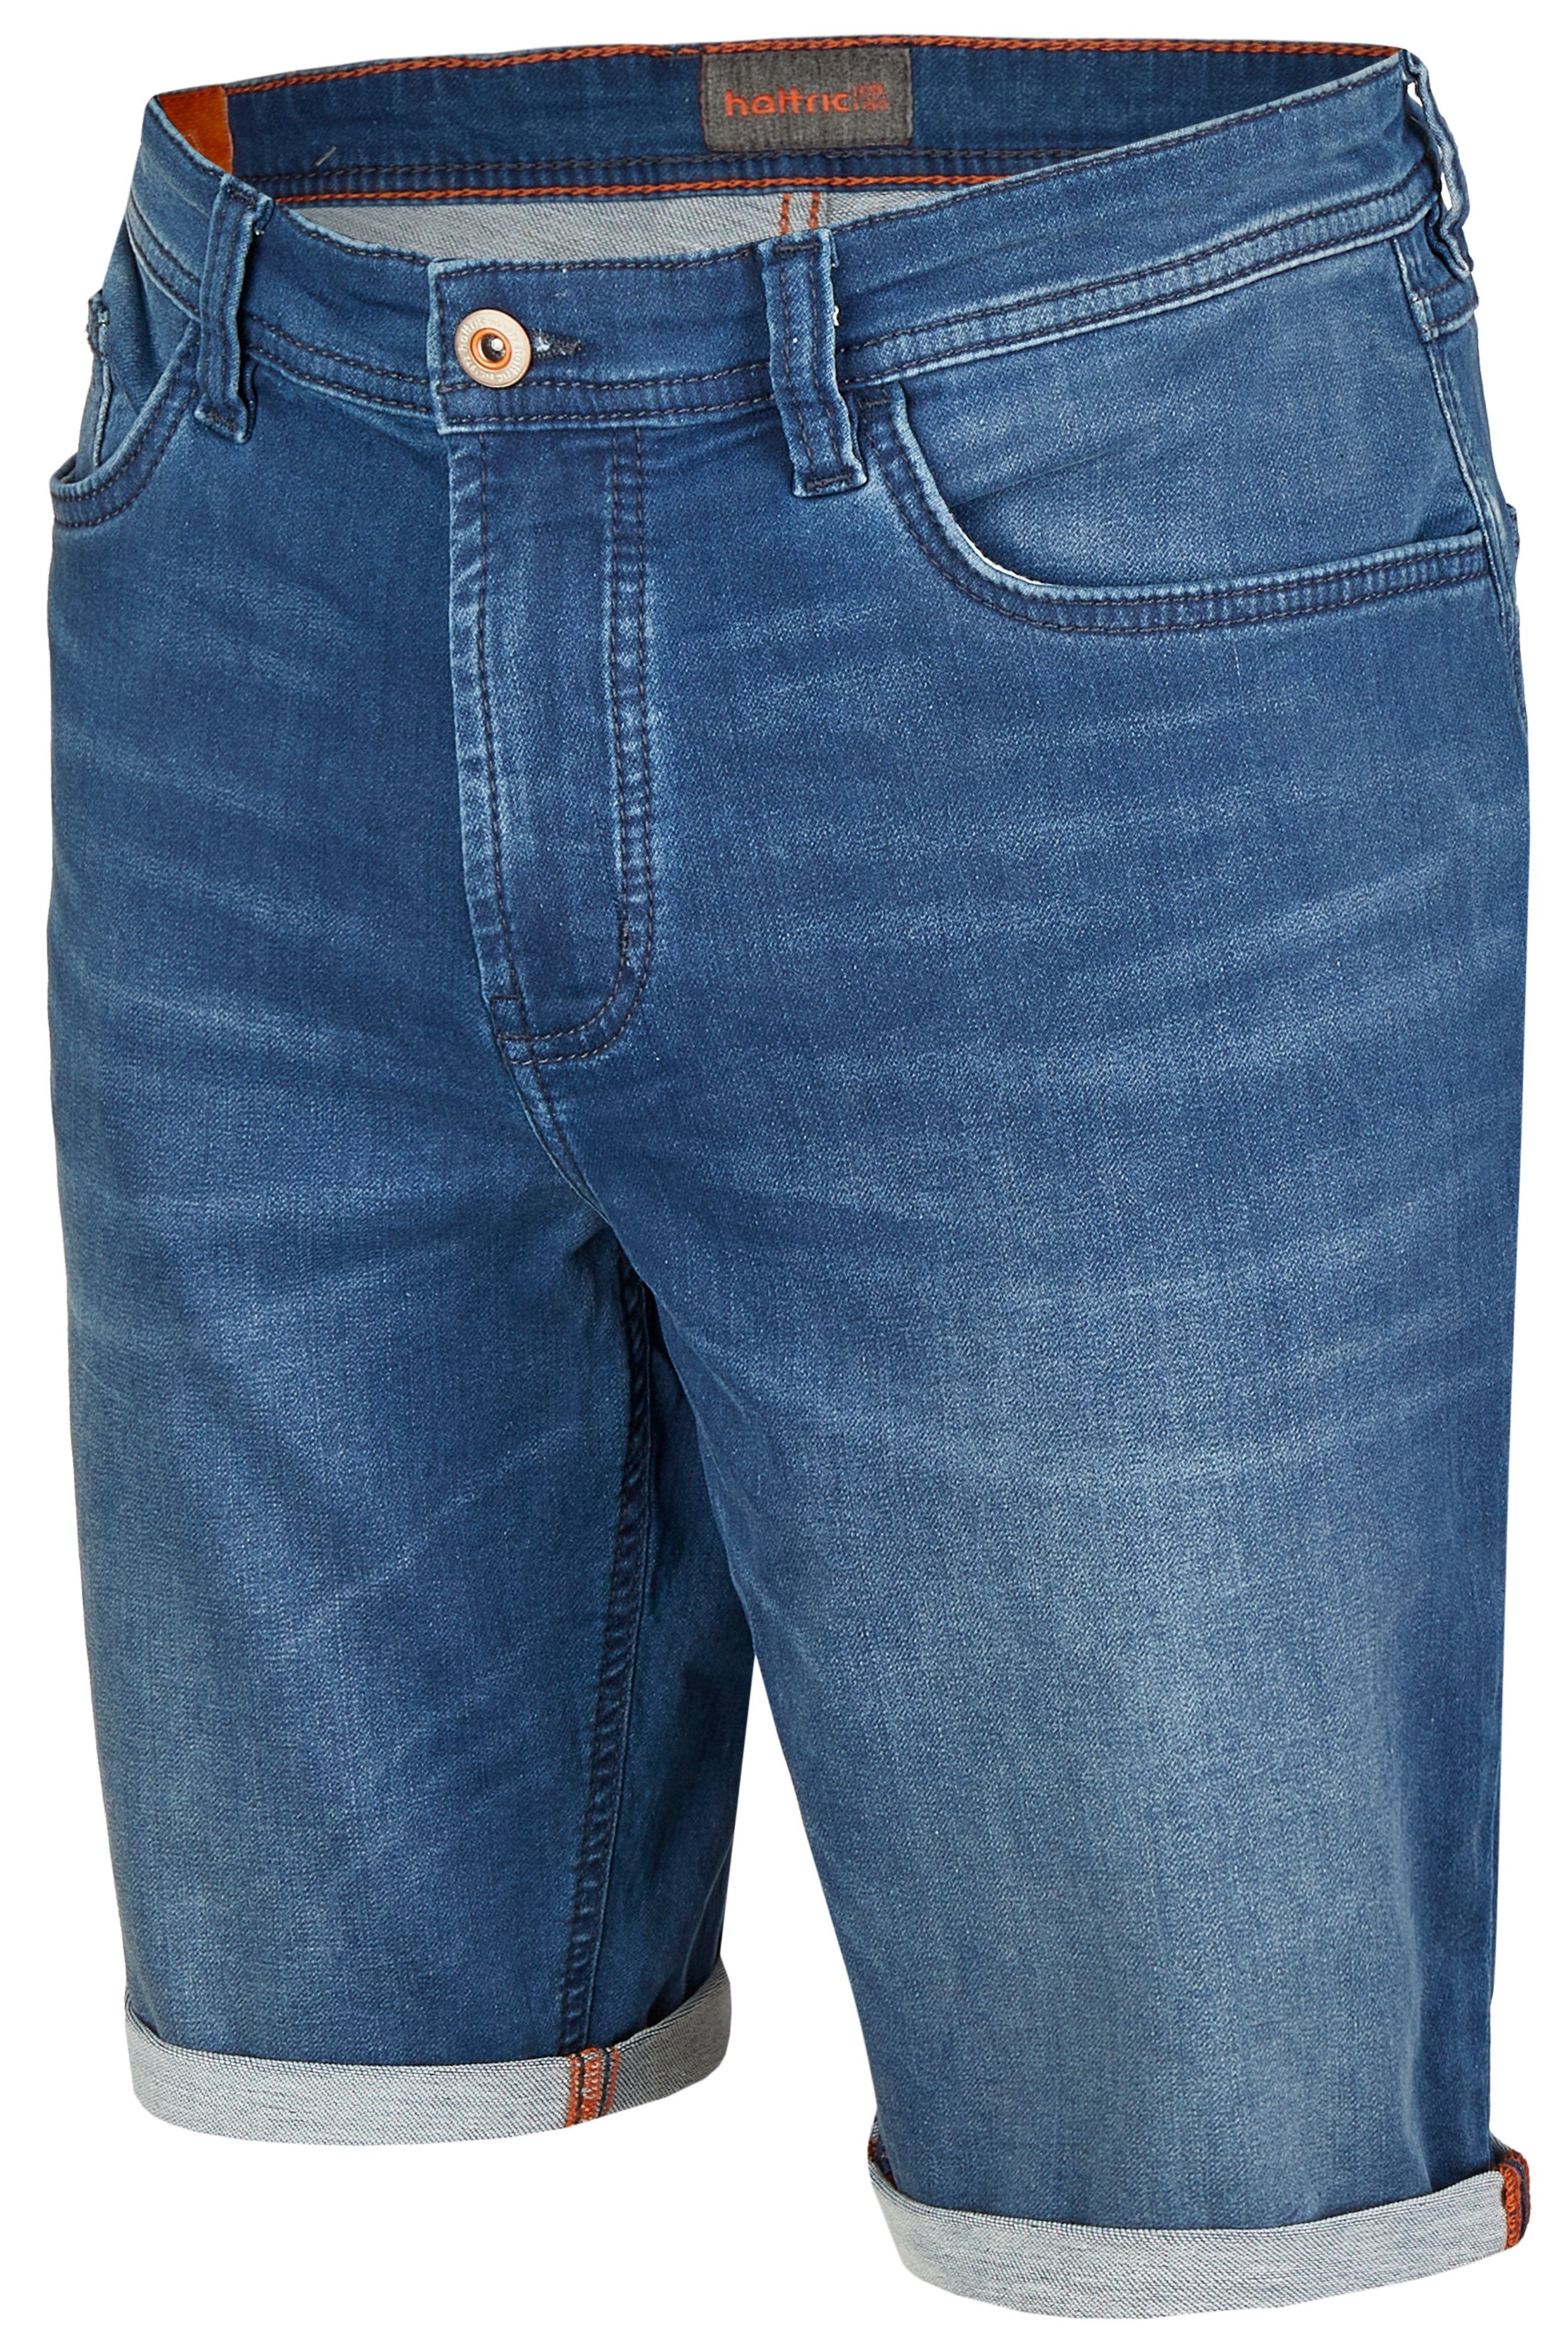 Hattric Bermudas Hattric Mid Jogg-Denim 5-Pocket-Shorts Blue Herren